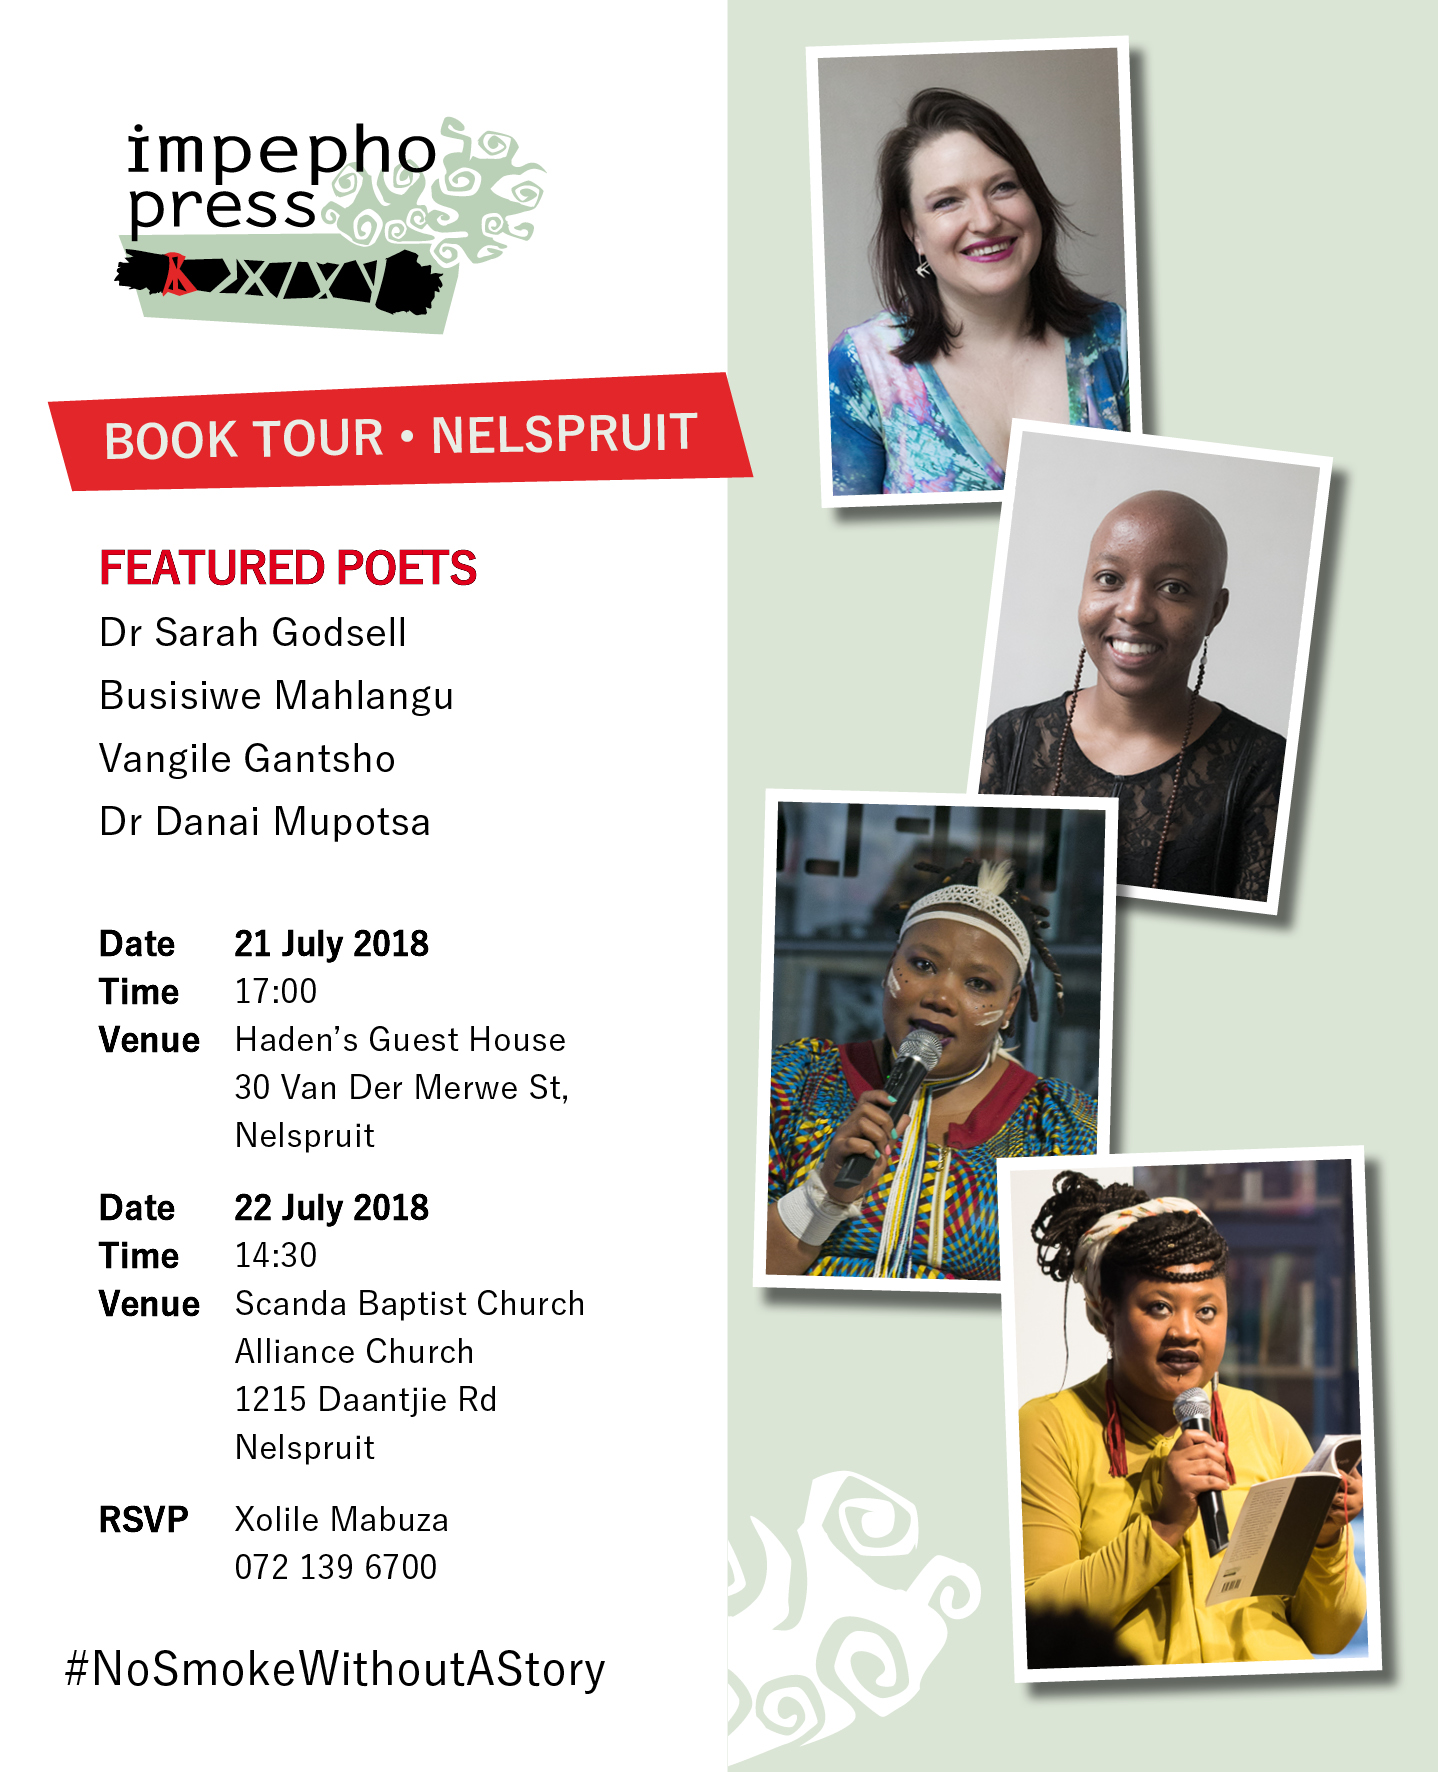 Nelspruit tour, South Africa, Dr Sarah Godsell Busisiwe Mahlangu Vangile Gantsho Dr Danai Mupotsa, impepho press